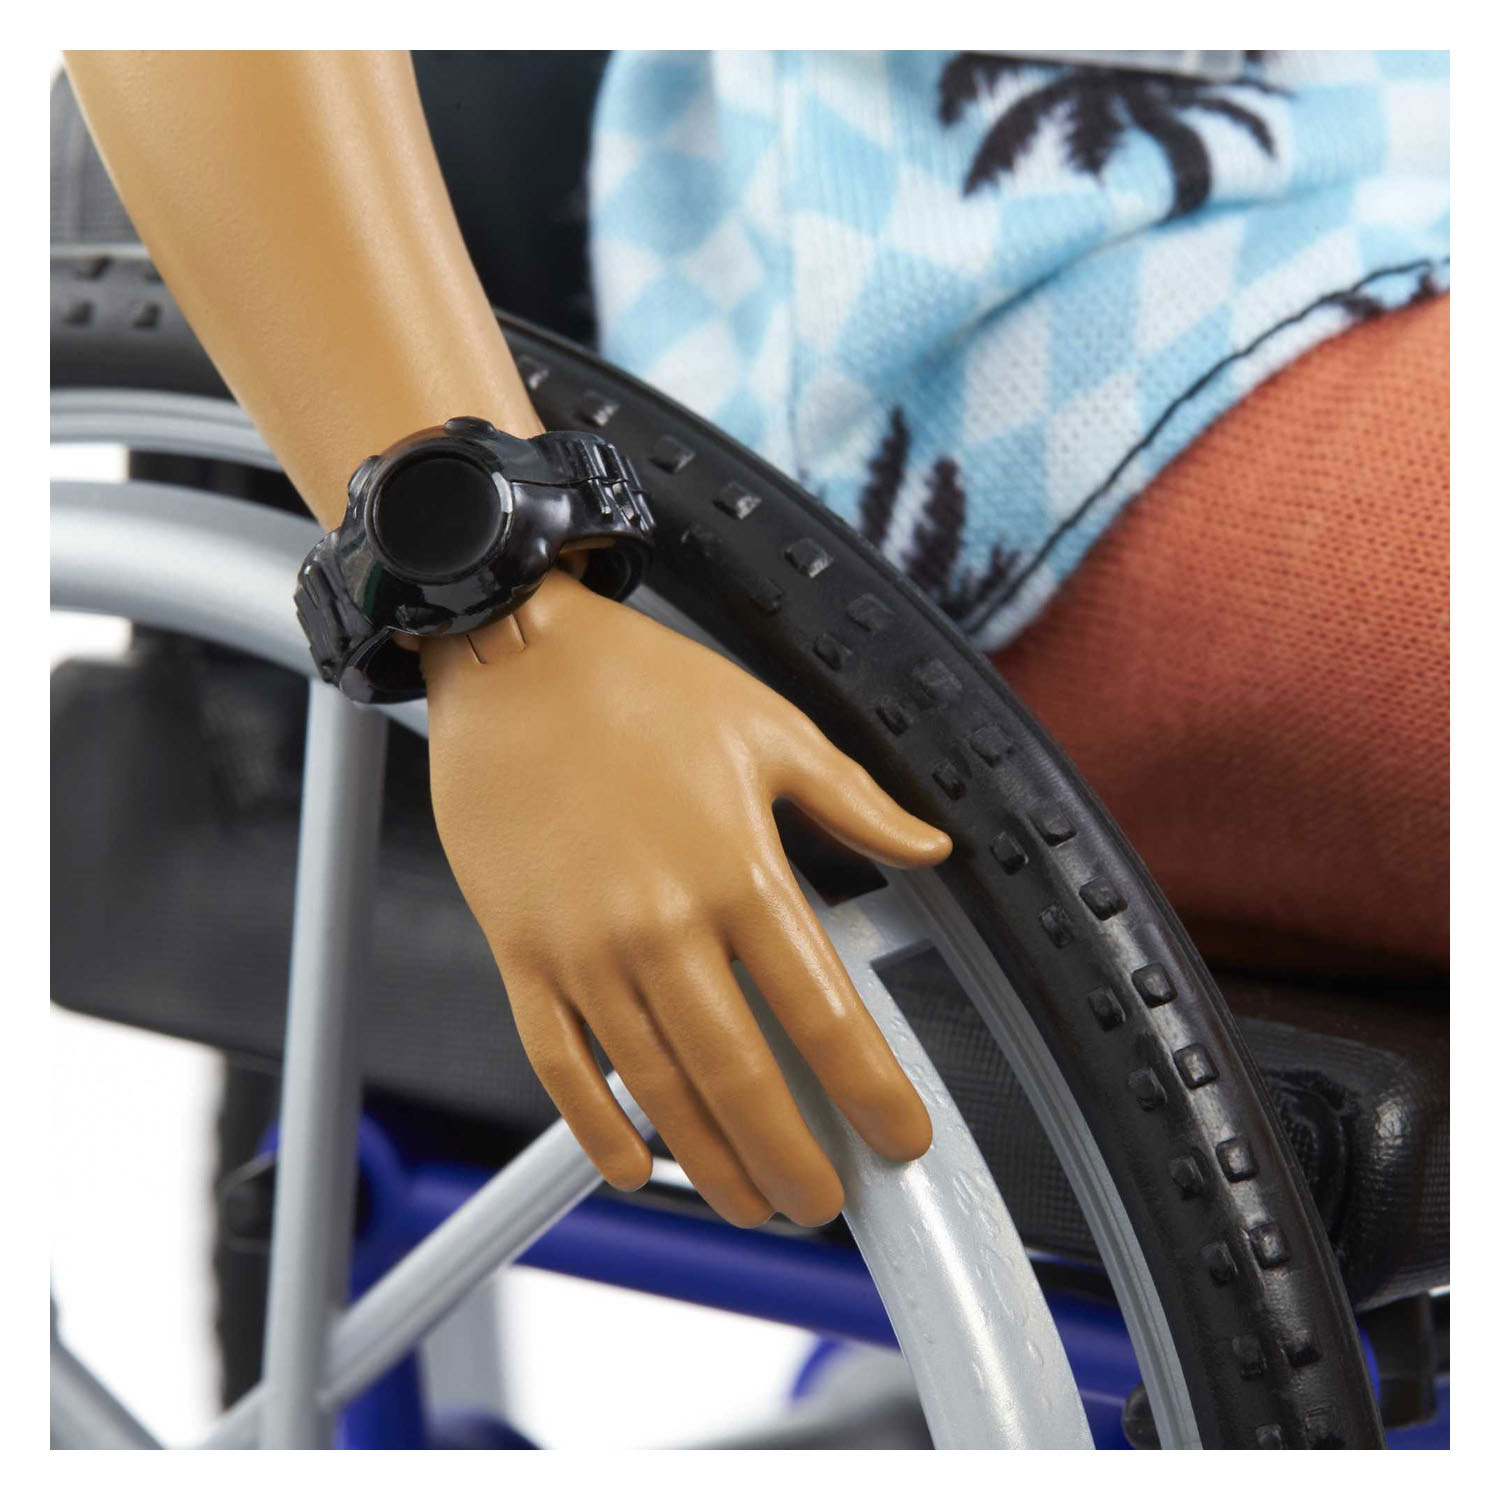 Barbie Fashionistas - Poupée mannequin Ken en fauteuil roulant